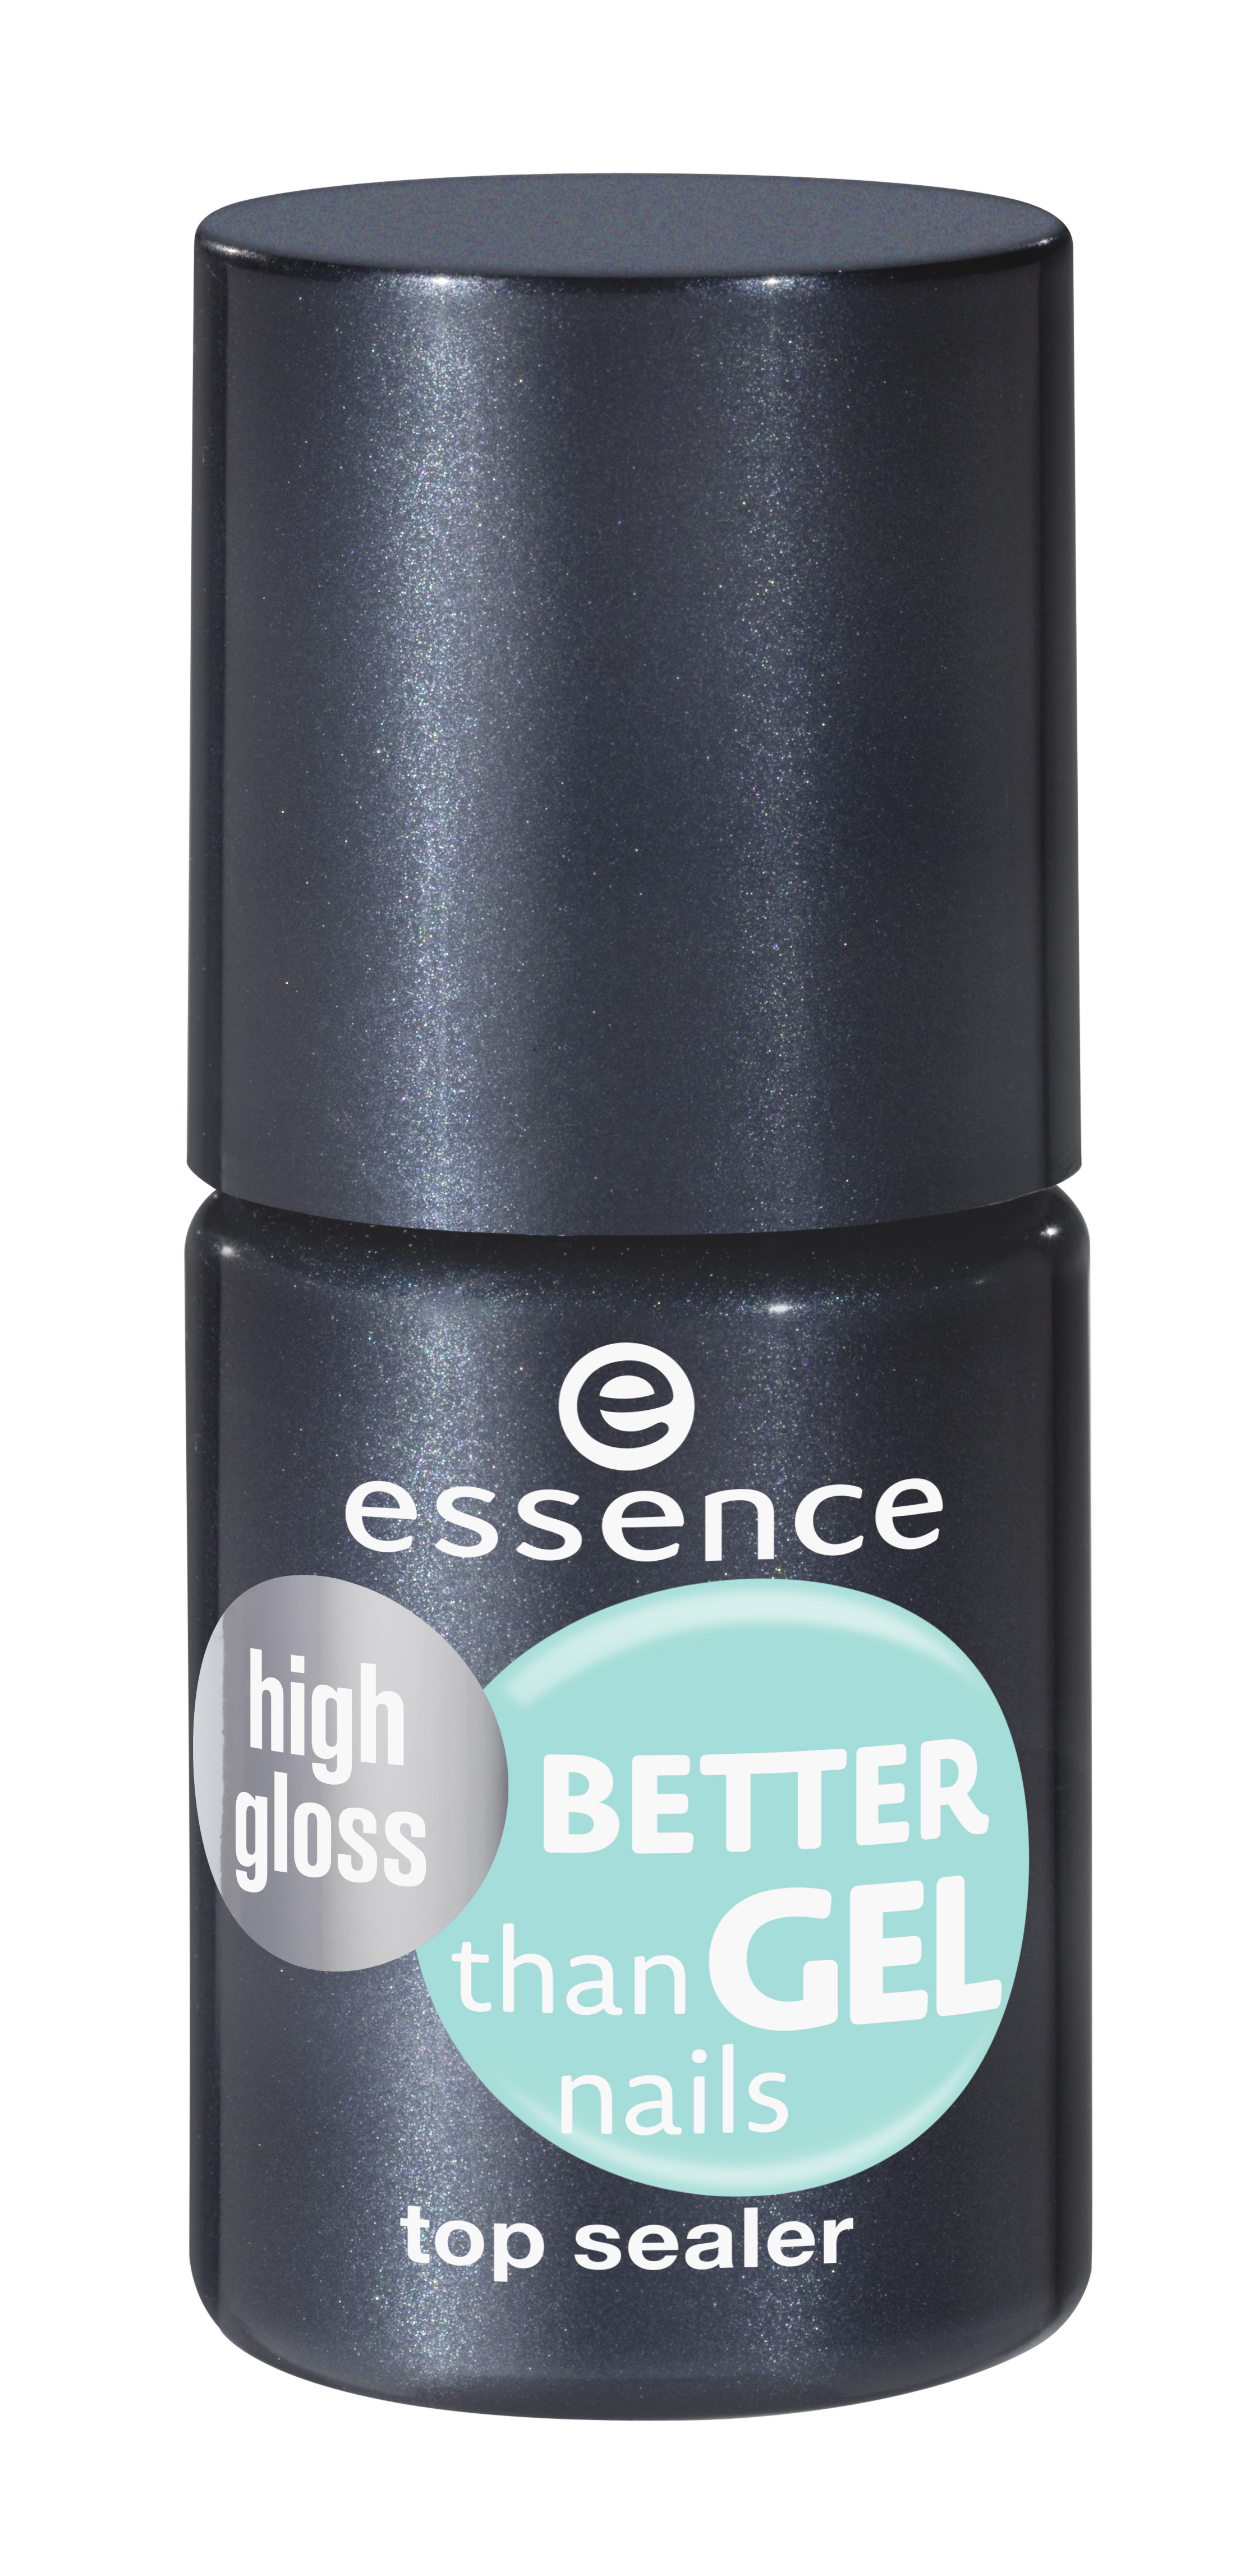 ess  better than gel nails top sealer high gloss